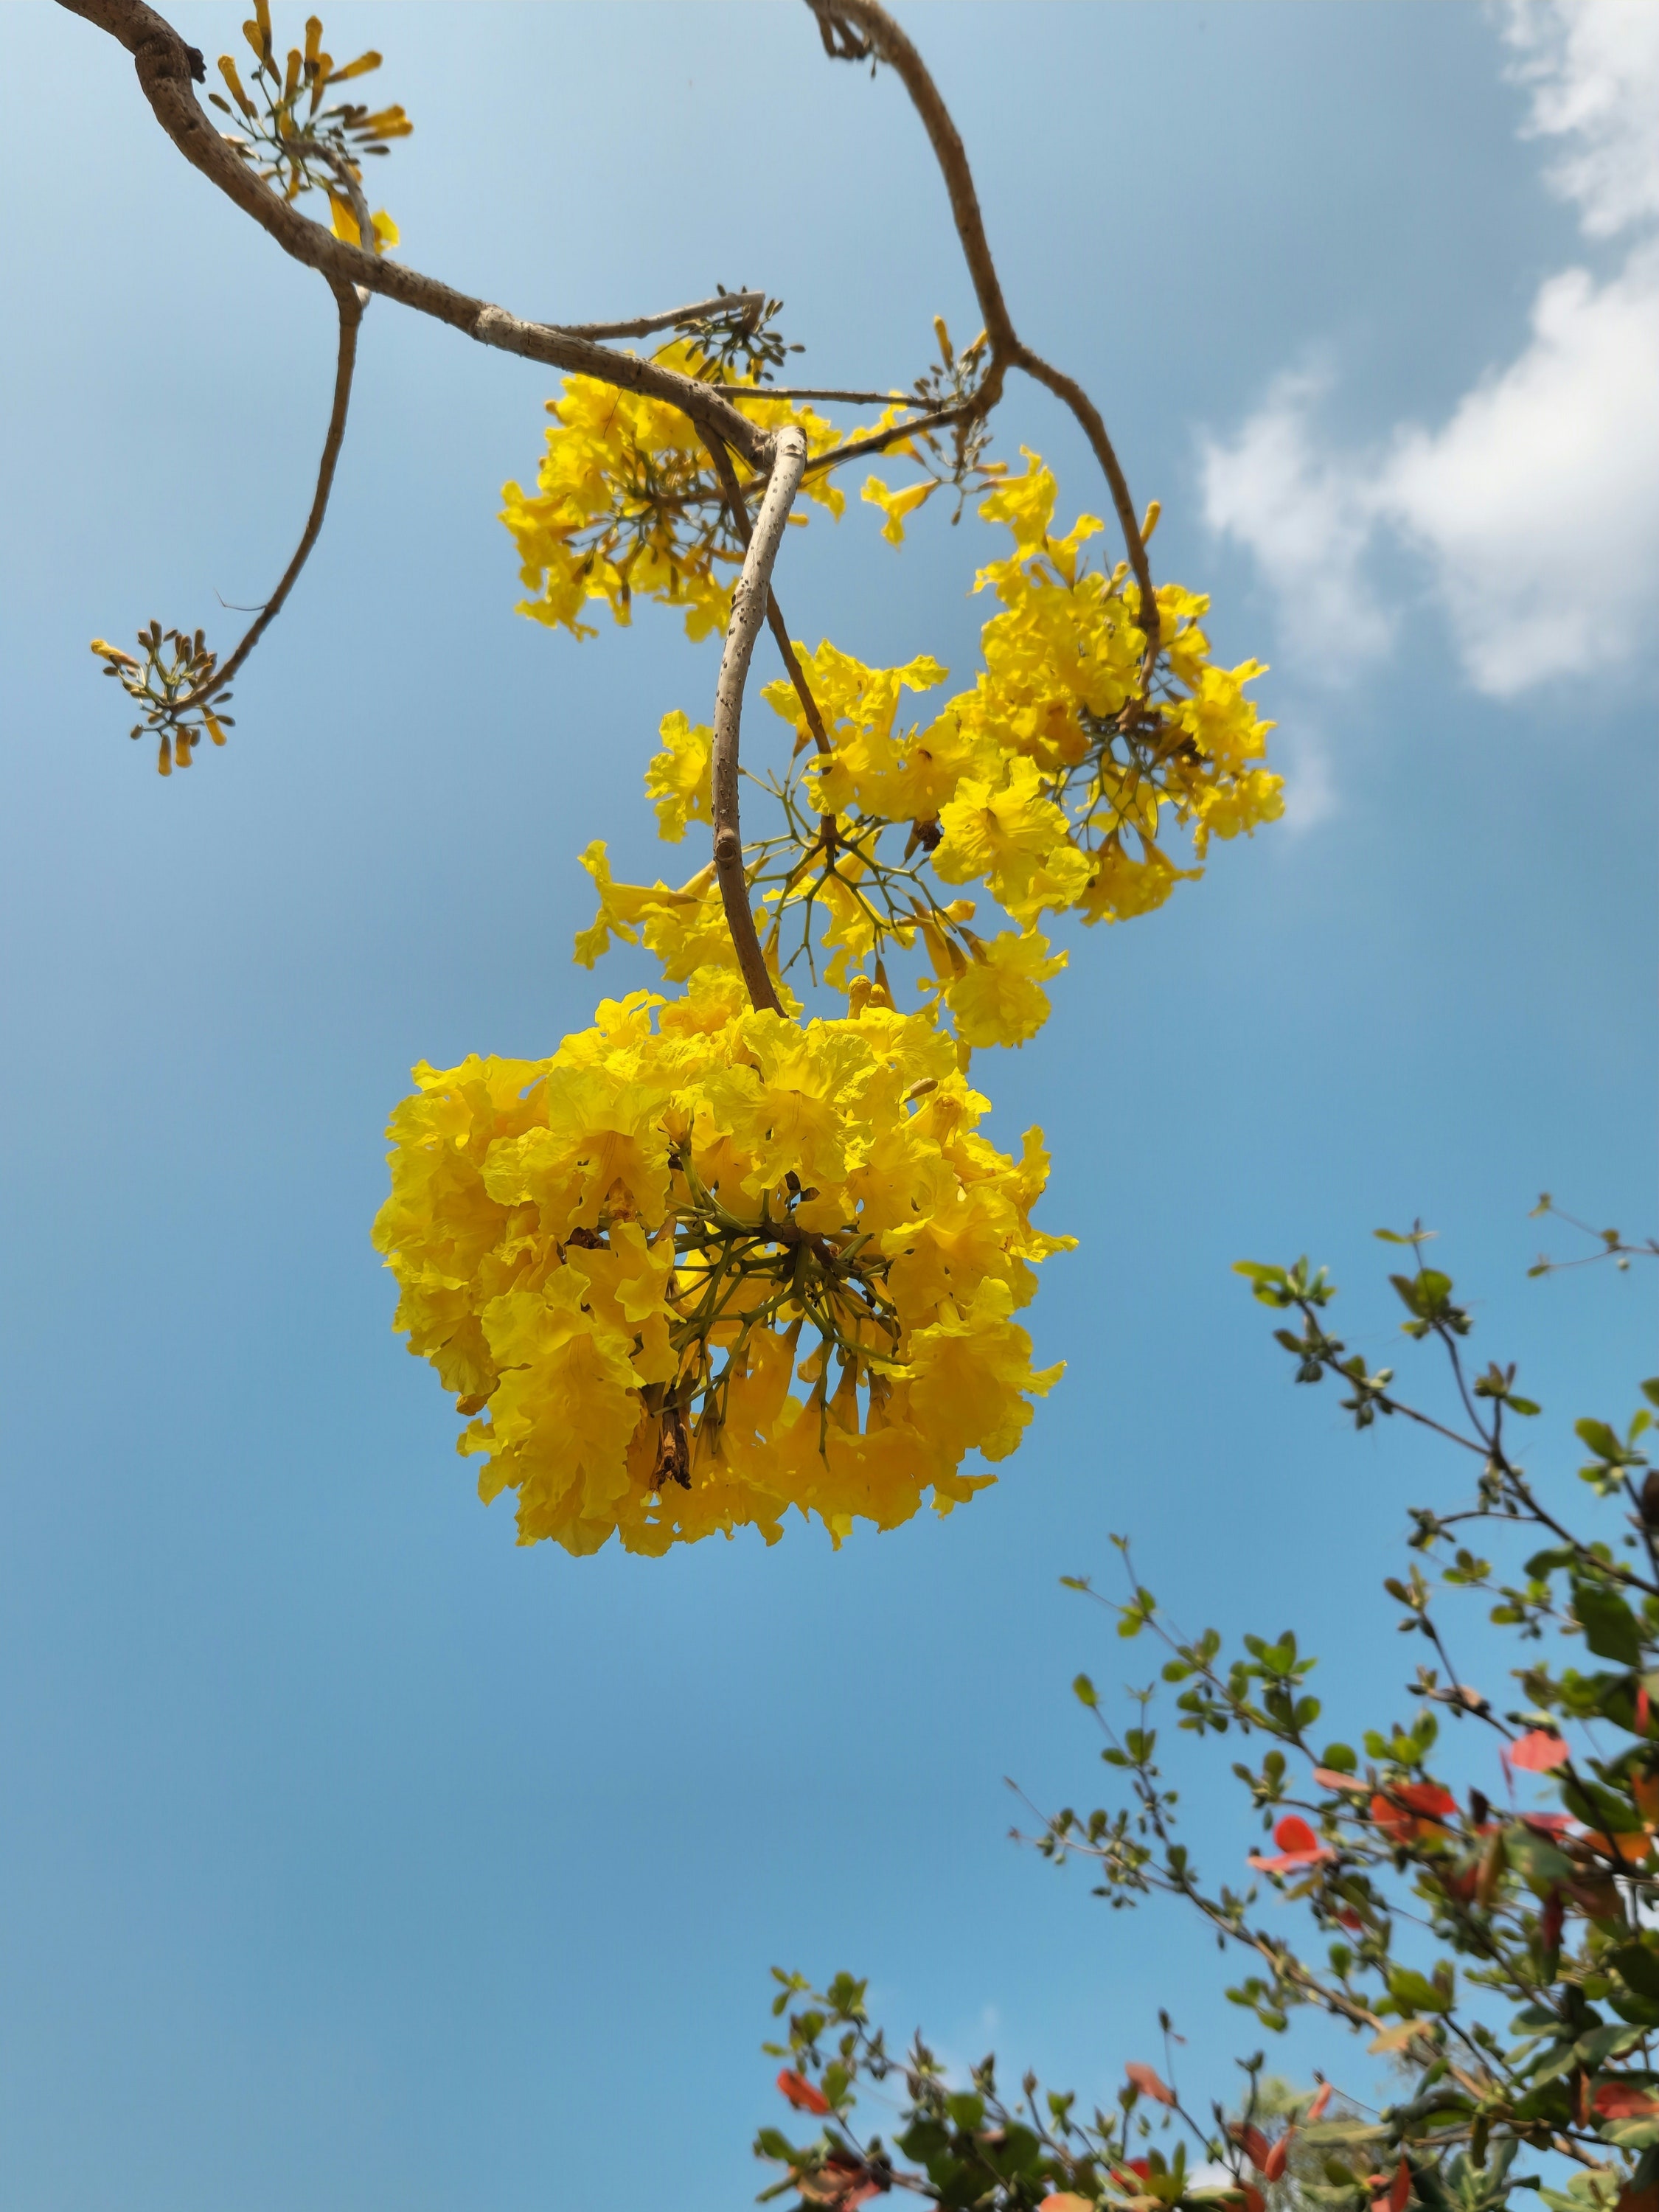 guayacán, el árbol amarillo que se convirtió en competencia de la jacaranda